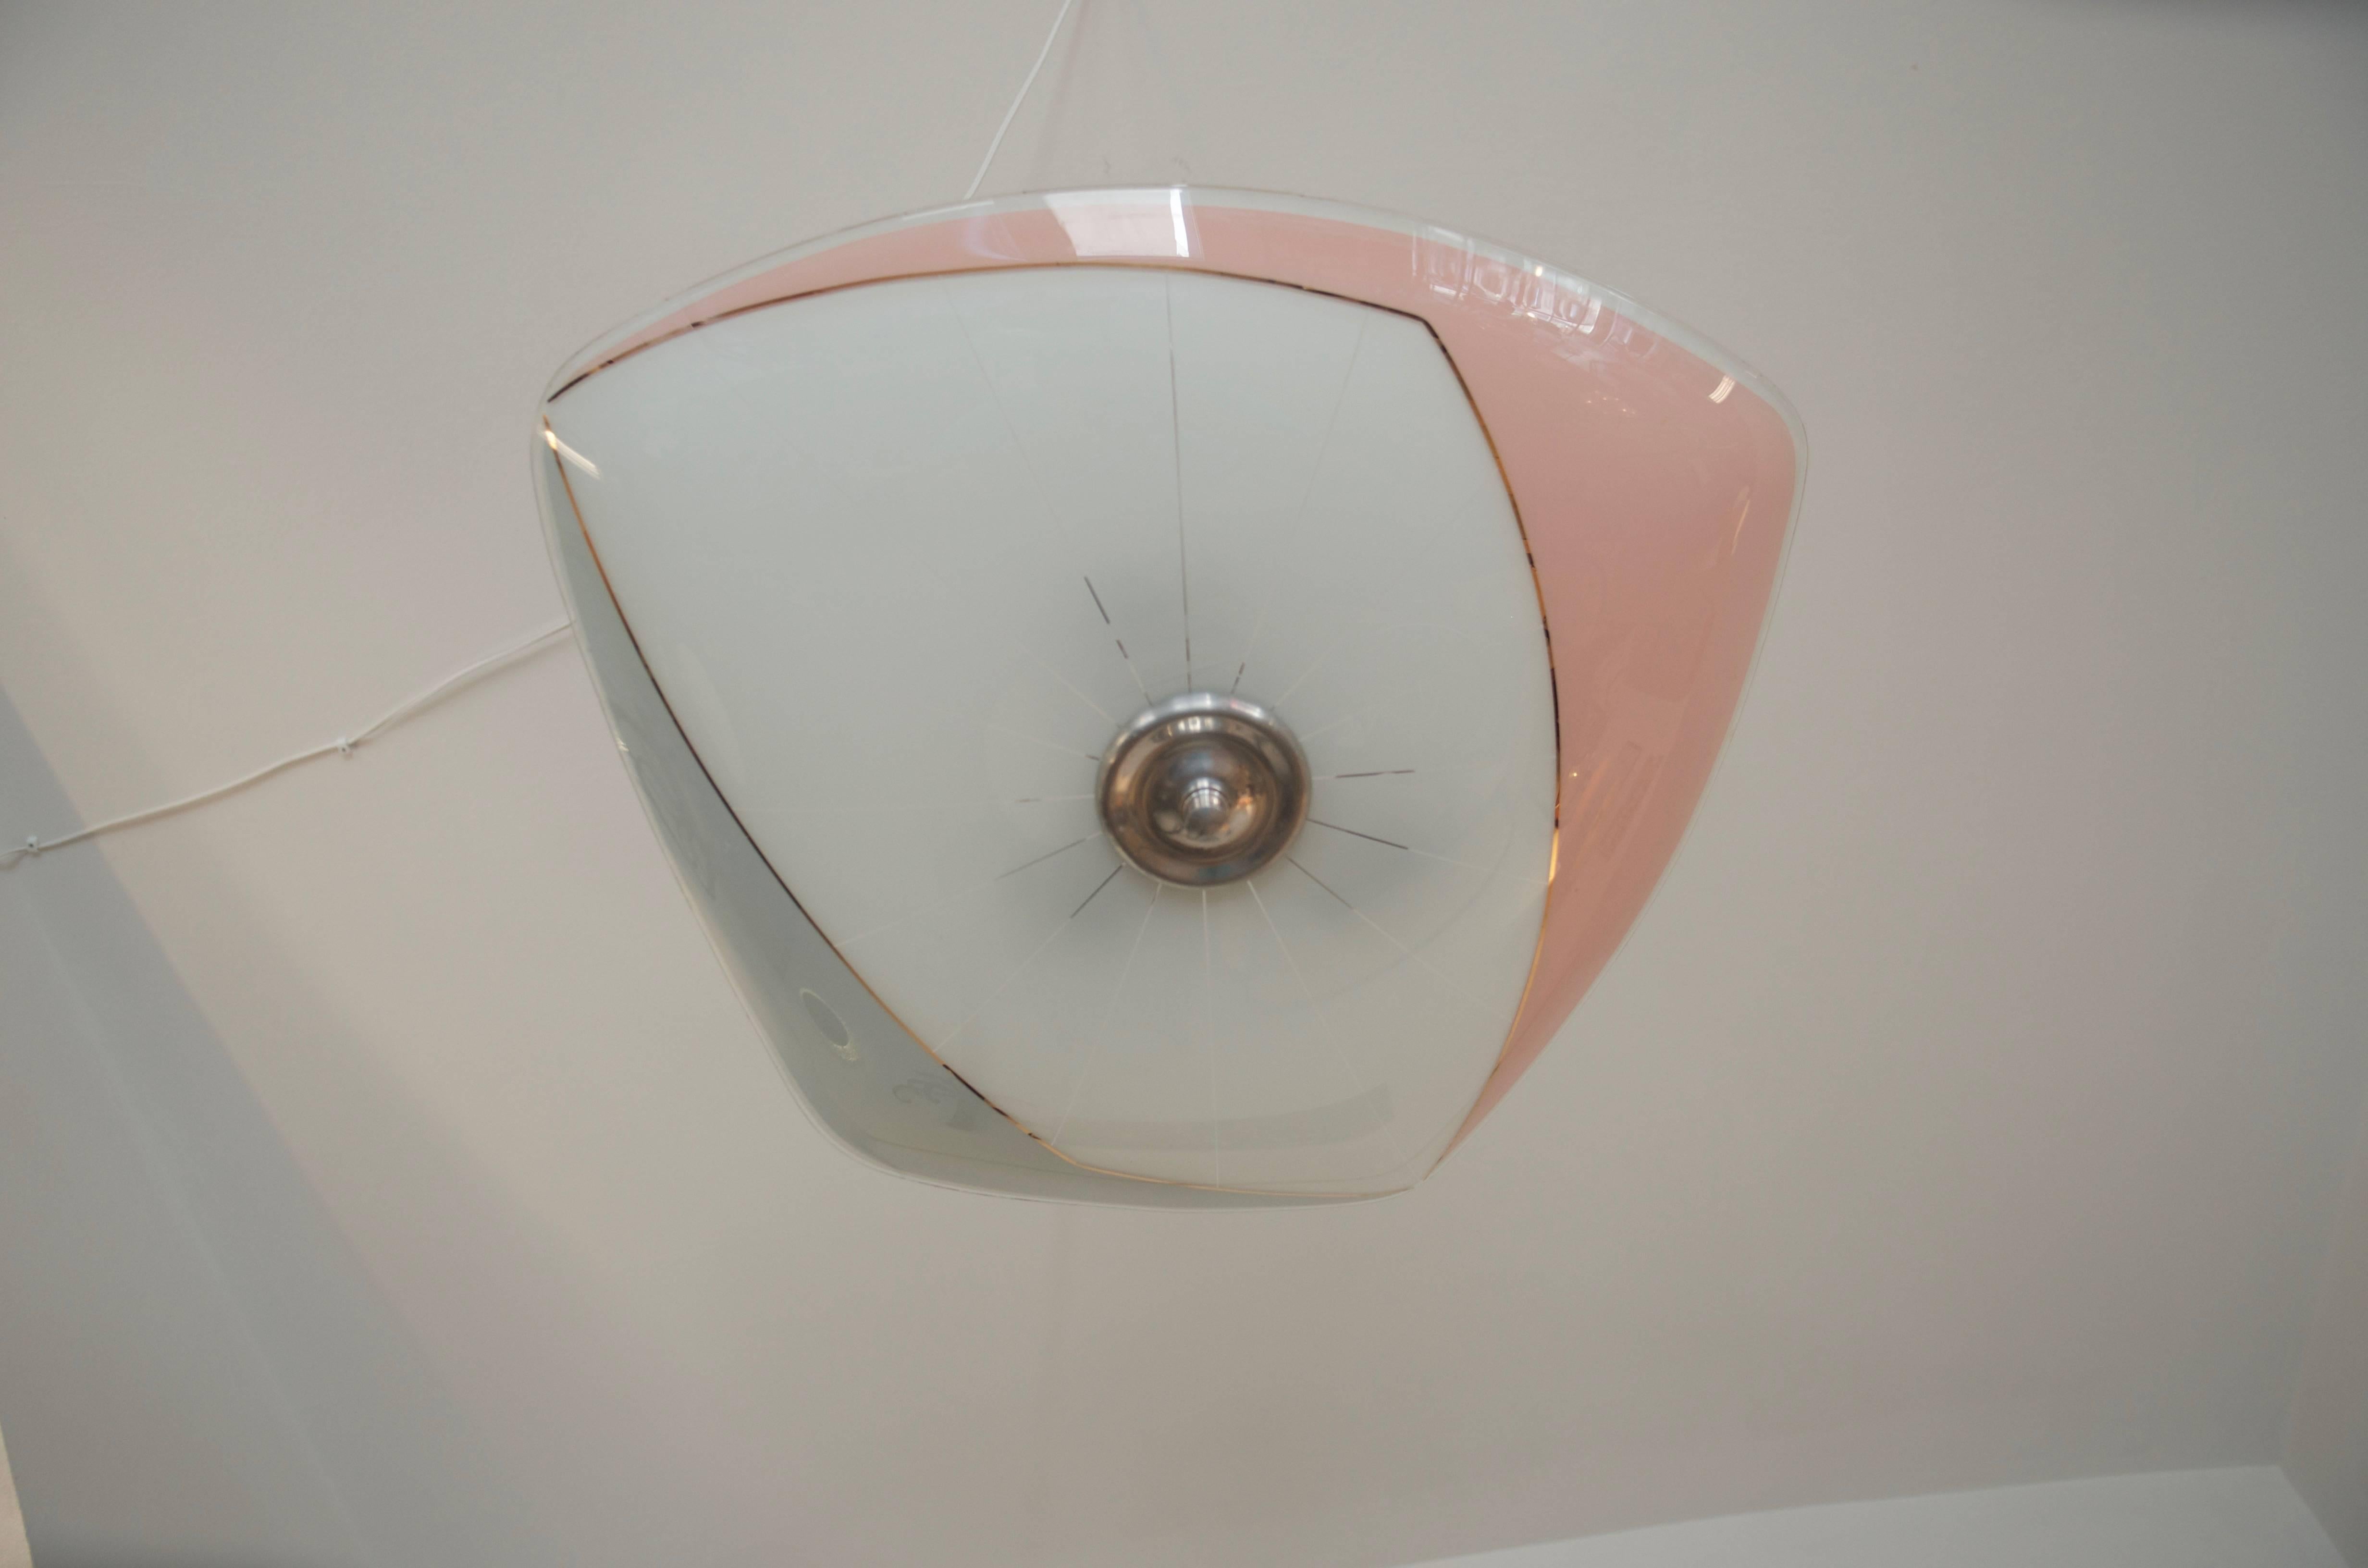 Ce pendentif a été conçu pour être exposé dans le pavillon de la Tchécoslovaquie à l'Exposition universelle de Bruxelles en 1958.
L'abat-jour est dans un état remarquable, sans rayures, fissures ou éclats, la quincaillerie du pendentif en aluminium